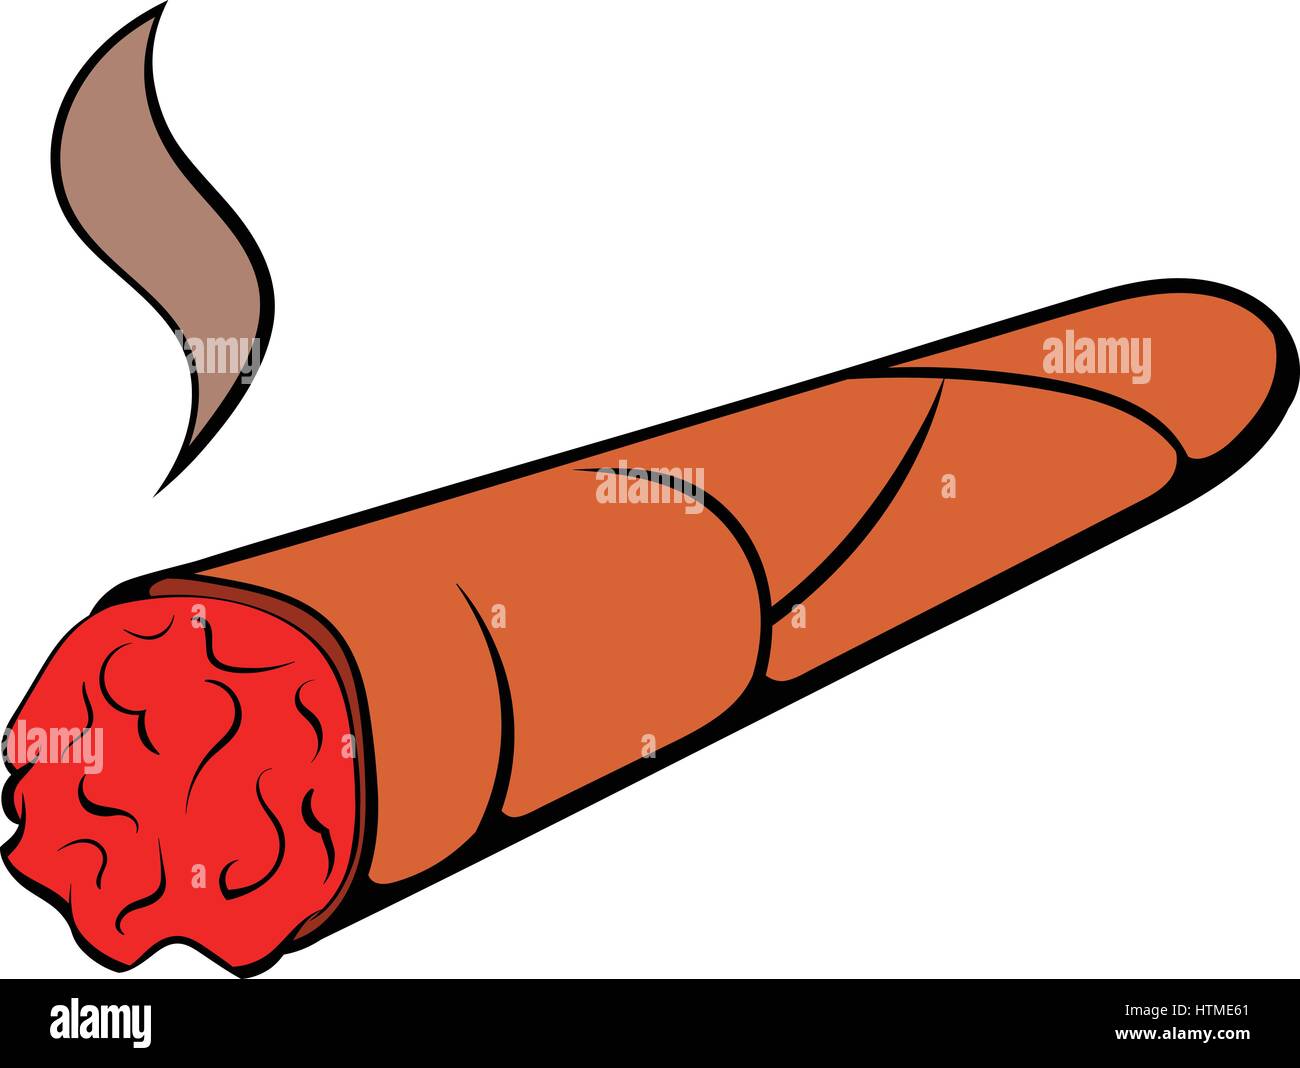 Cigar icon cartoon Stock Vector